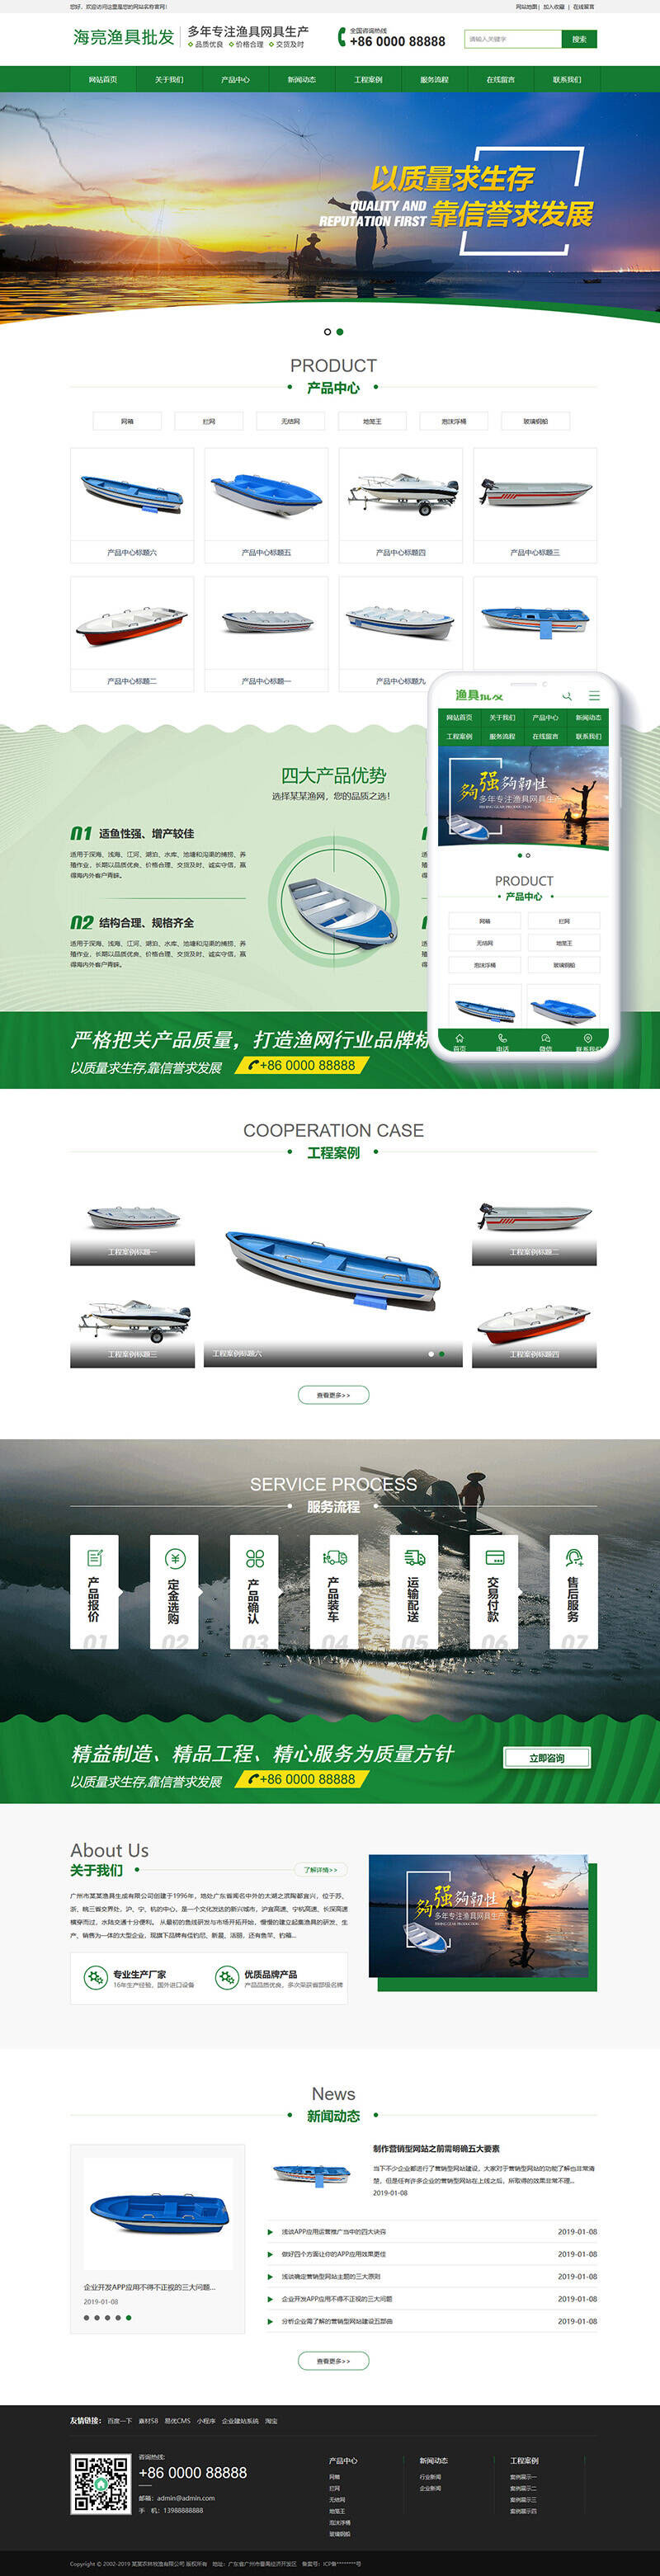 L72织梦dedecms渔具批发农林牧渔企业网站模板(带手机移动端)